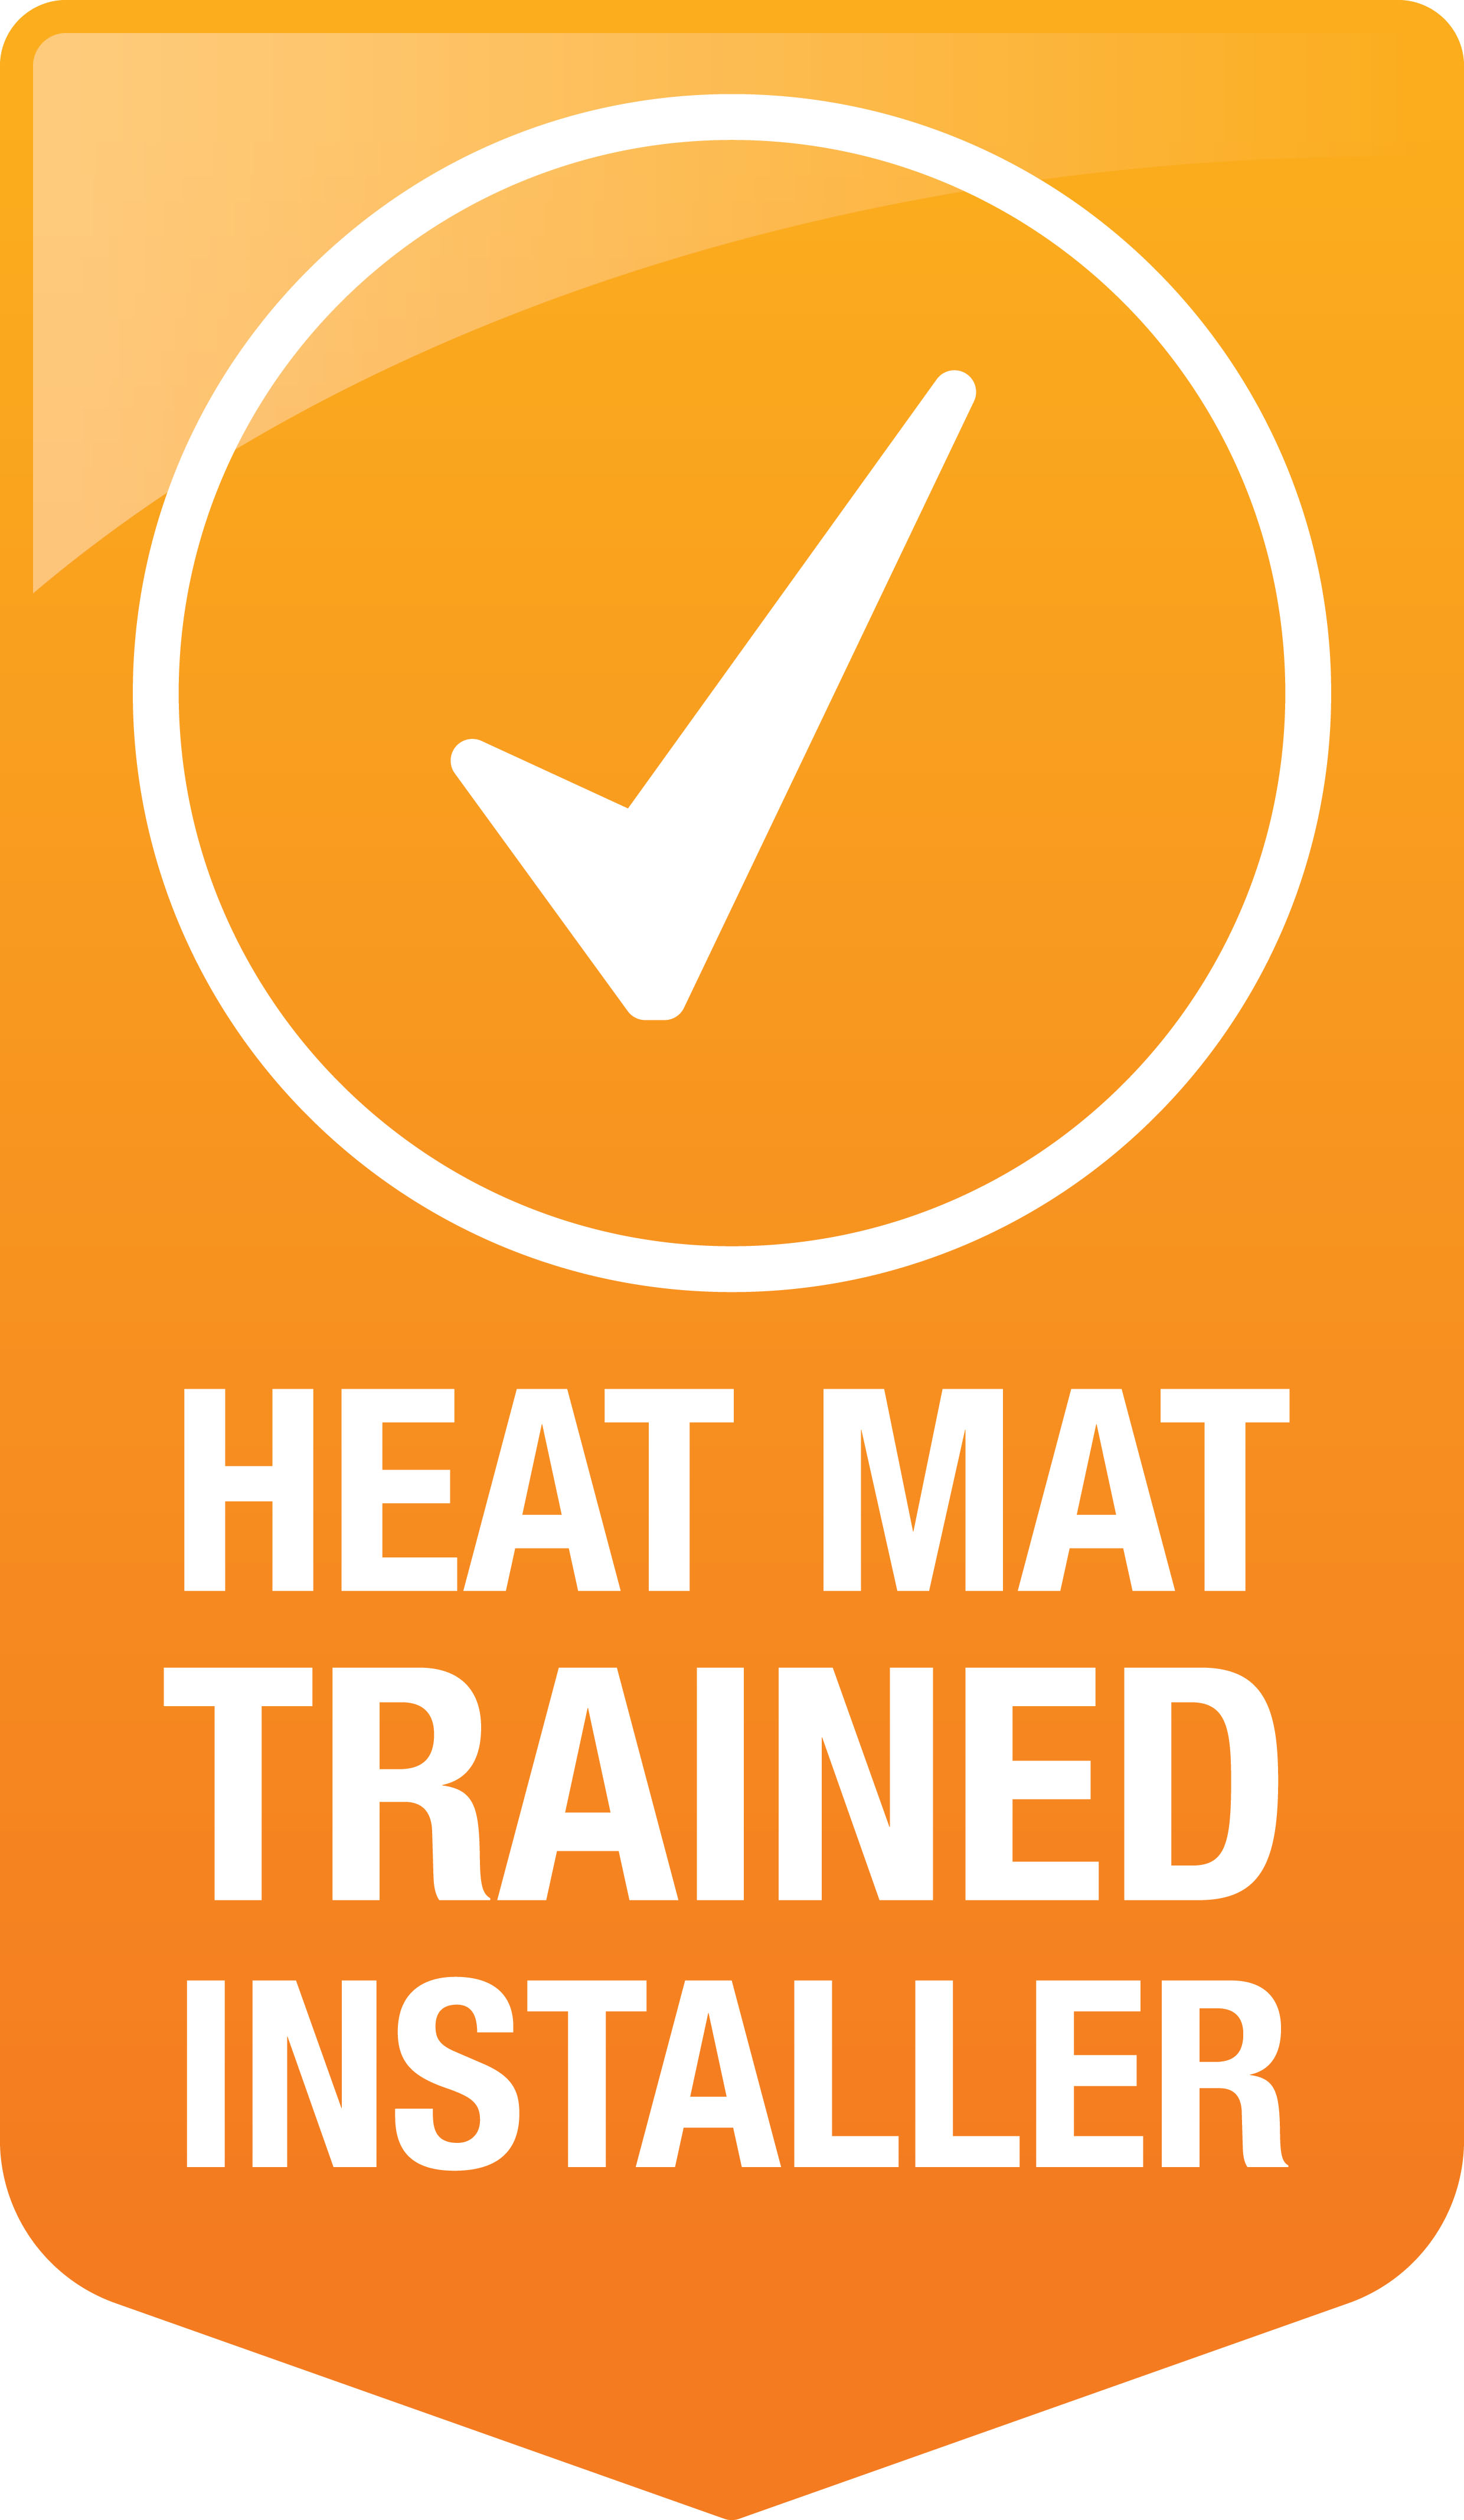 Heat Mat Trained Installer